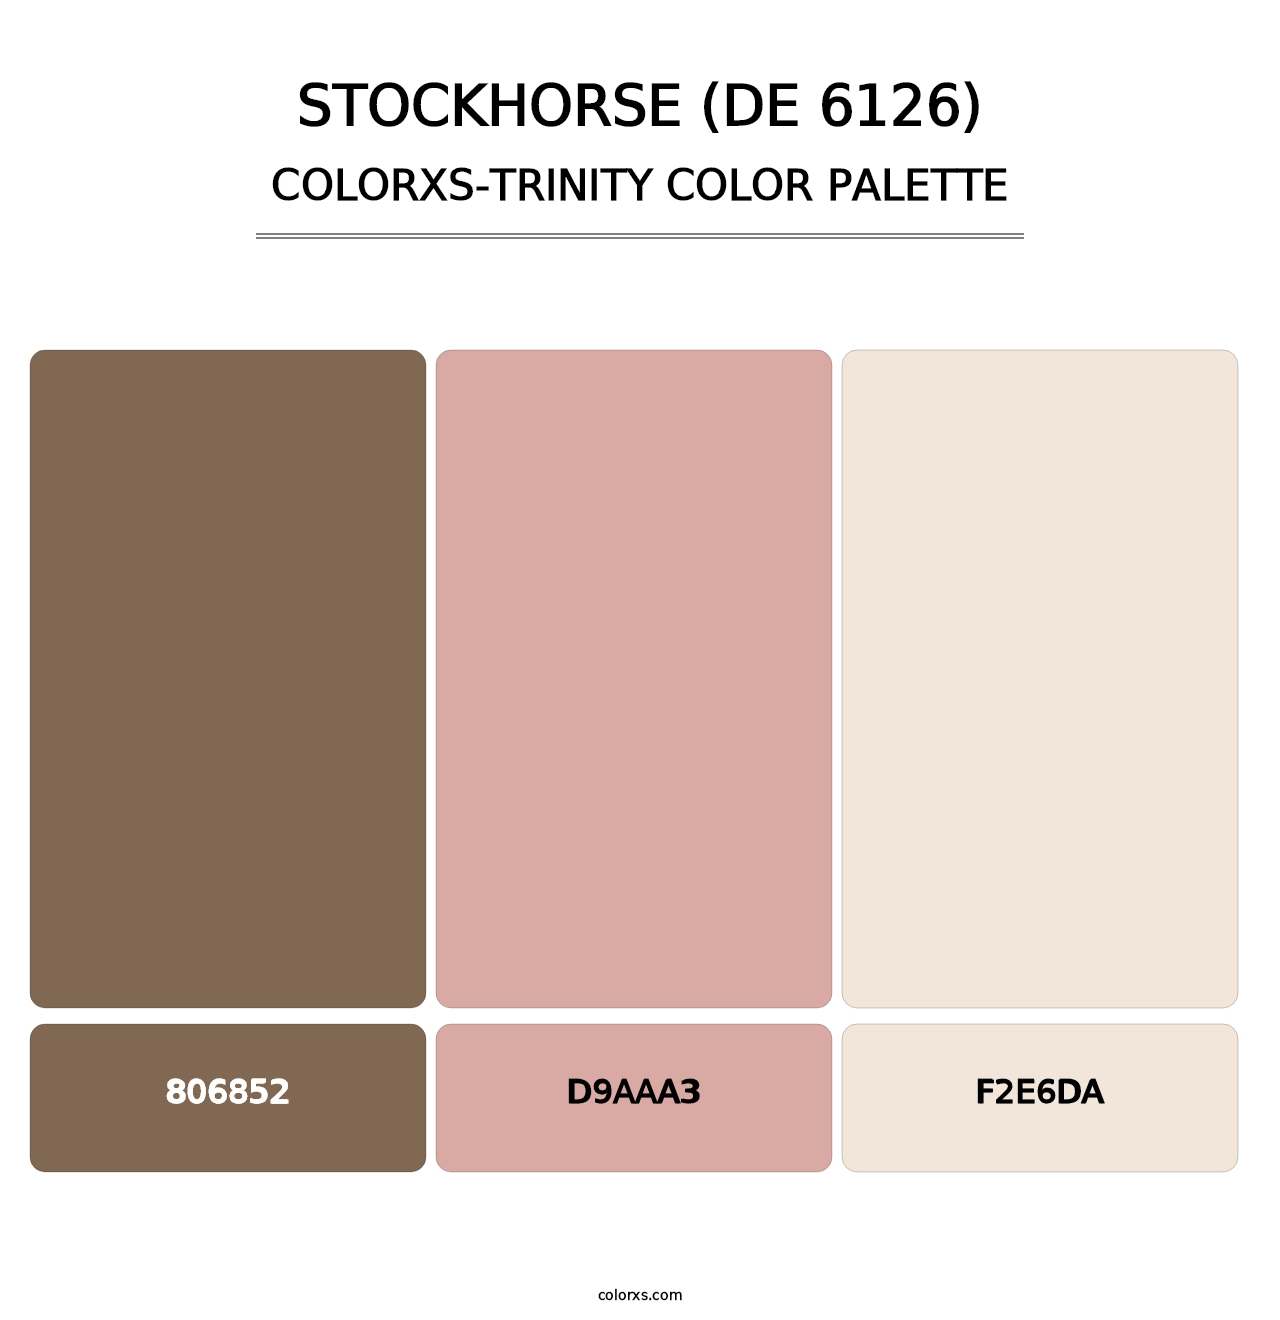 Stockhorse (DE 6126) - Colorxs Trinity Palette